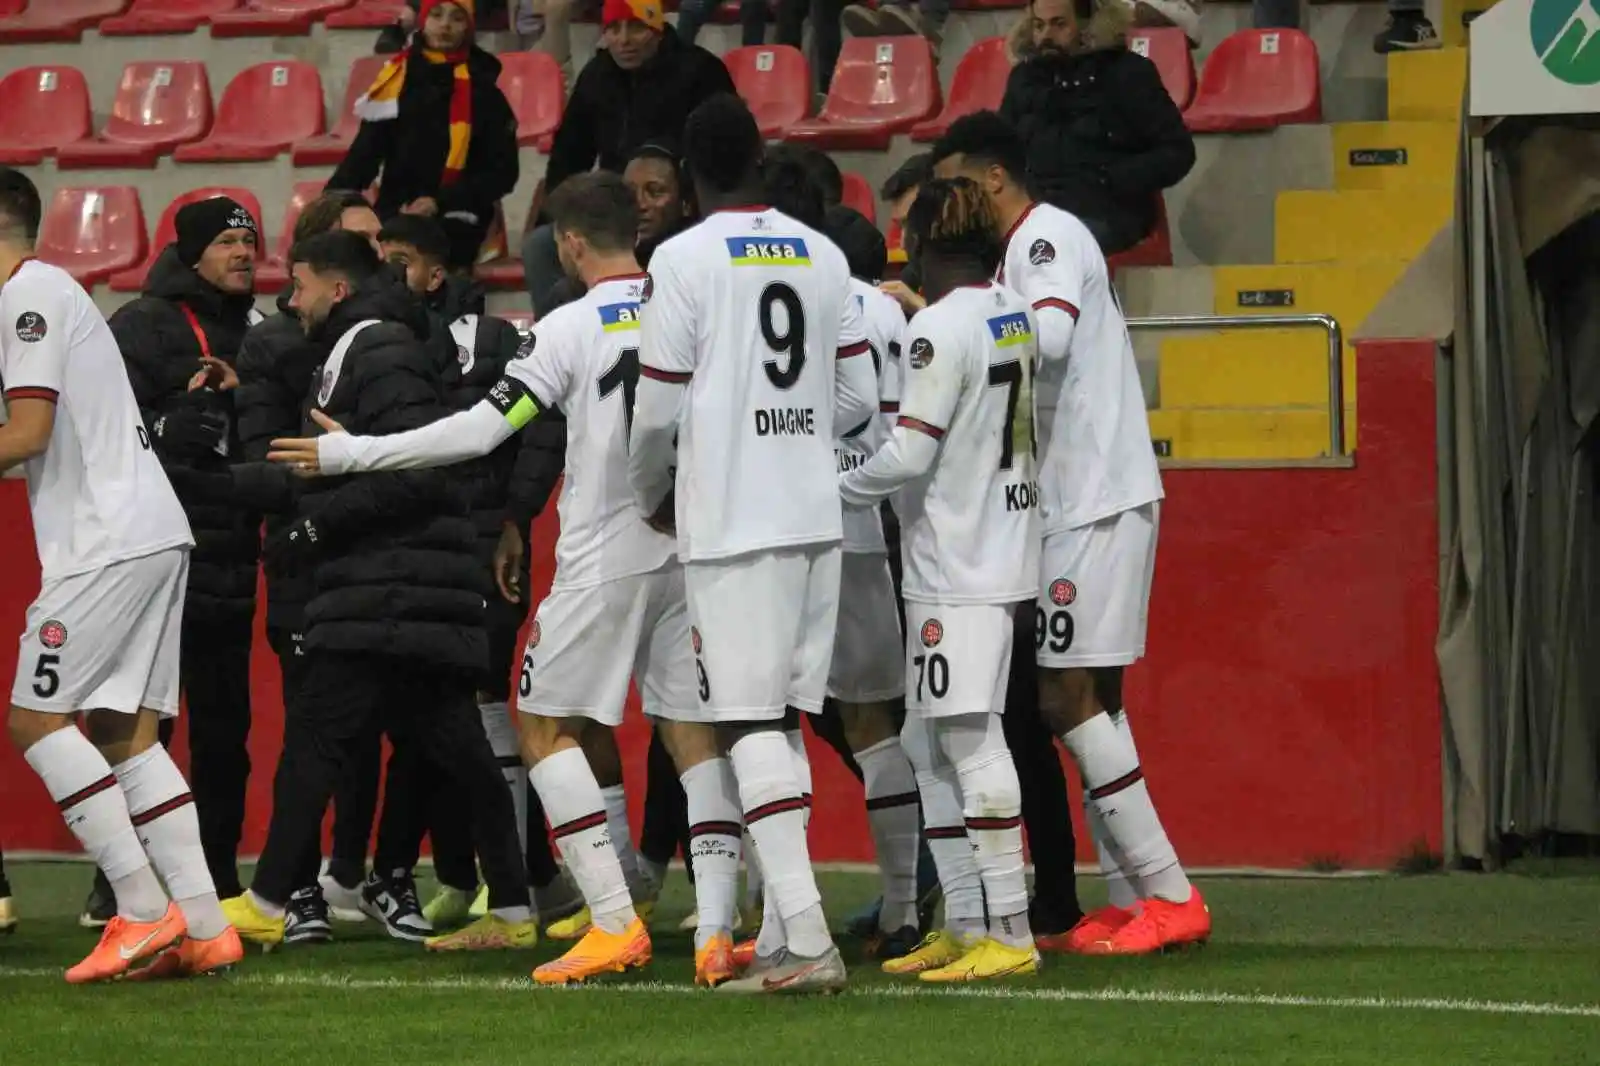 Spor Toto Süper Lig: Kayserispor: 2 - Fatih Karagümrük: 4 (Maç sonucu)
